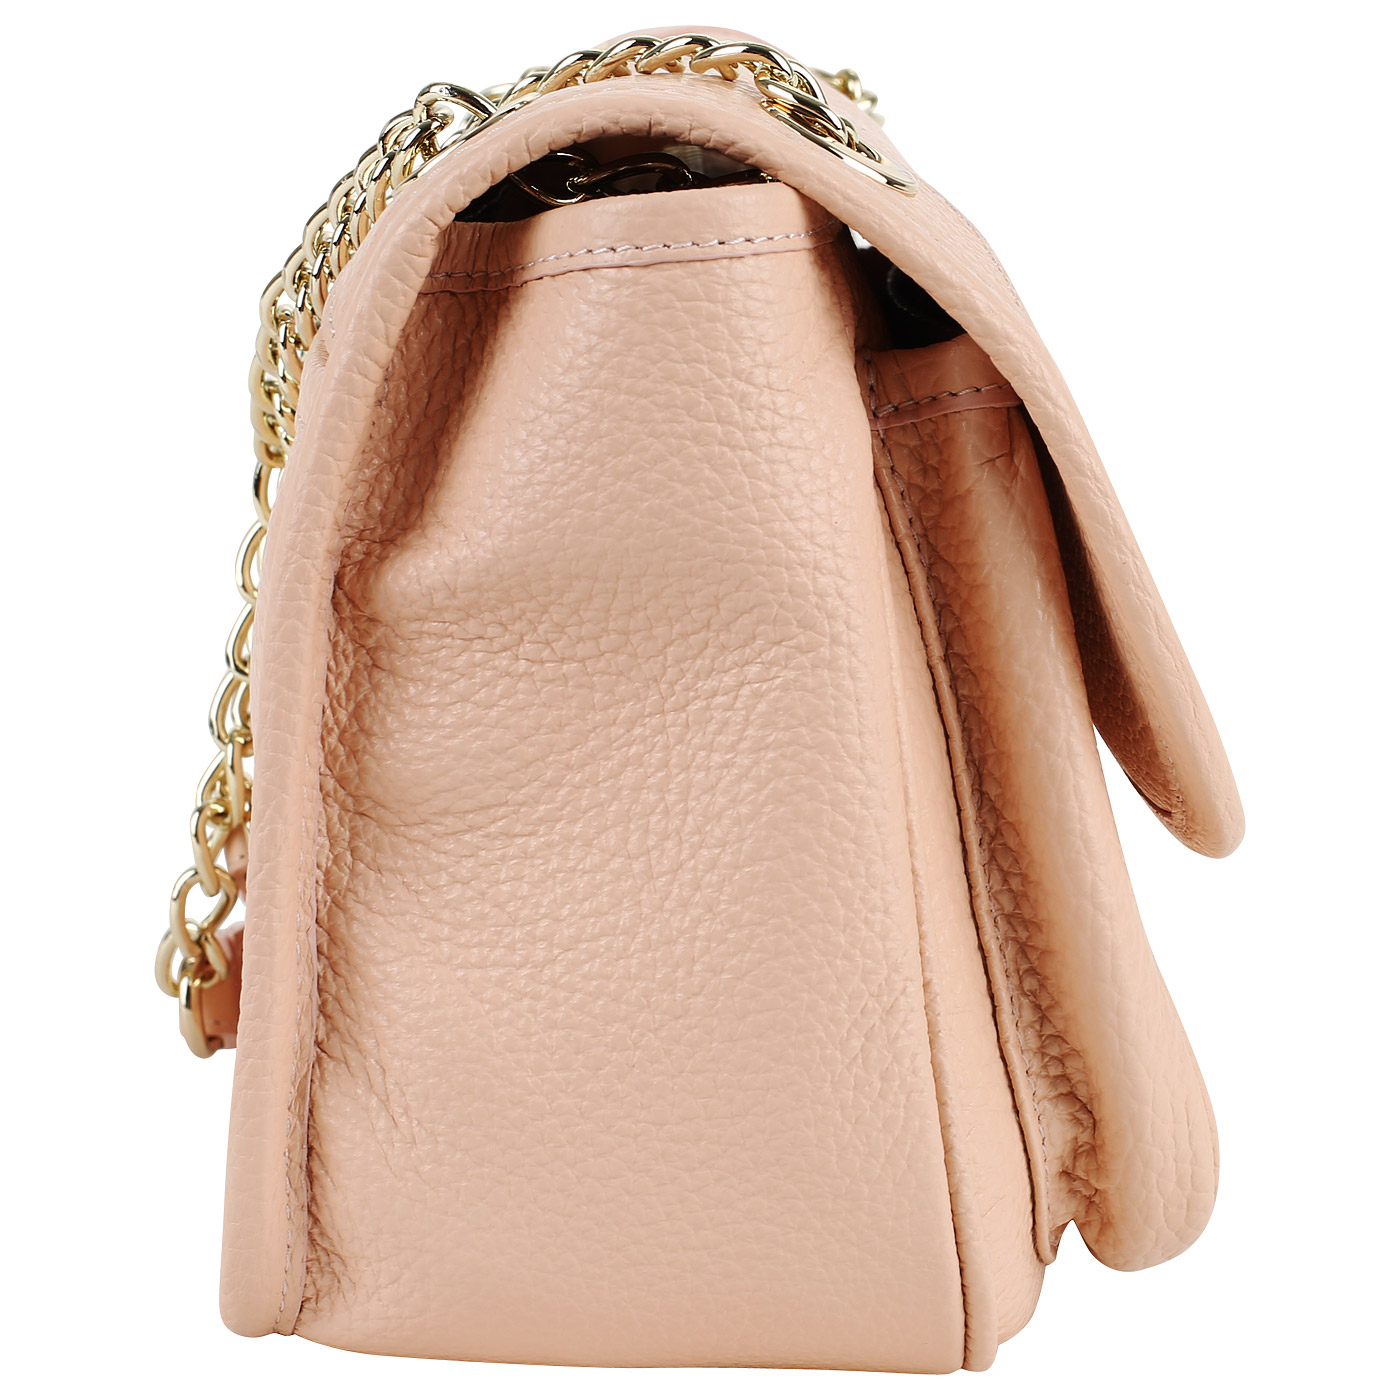 Розовая сумочка с цепочкой через плечо Aurelli Soft